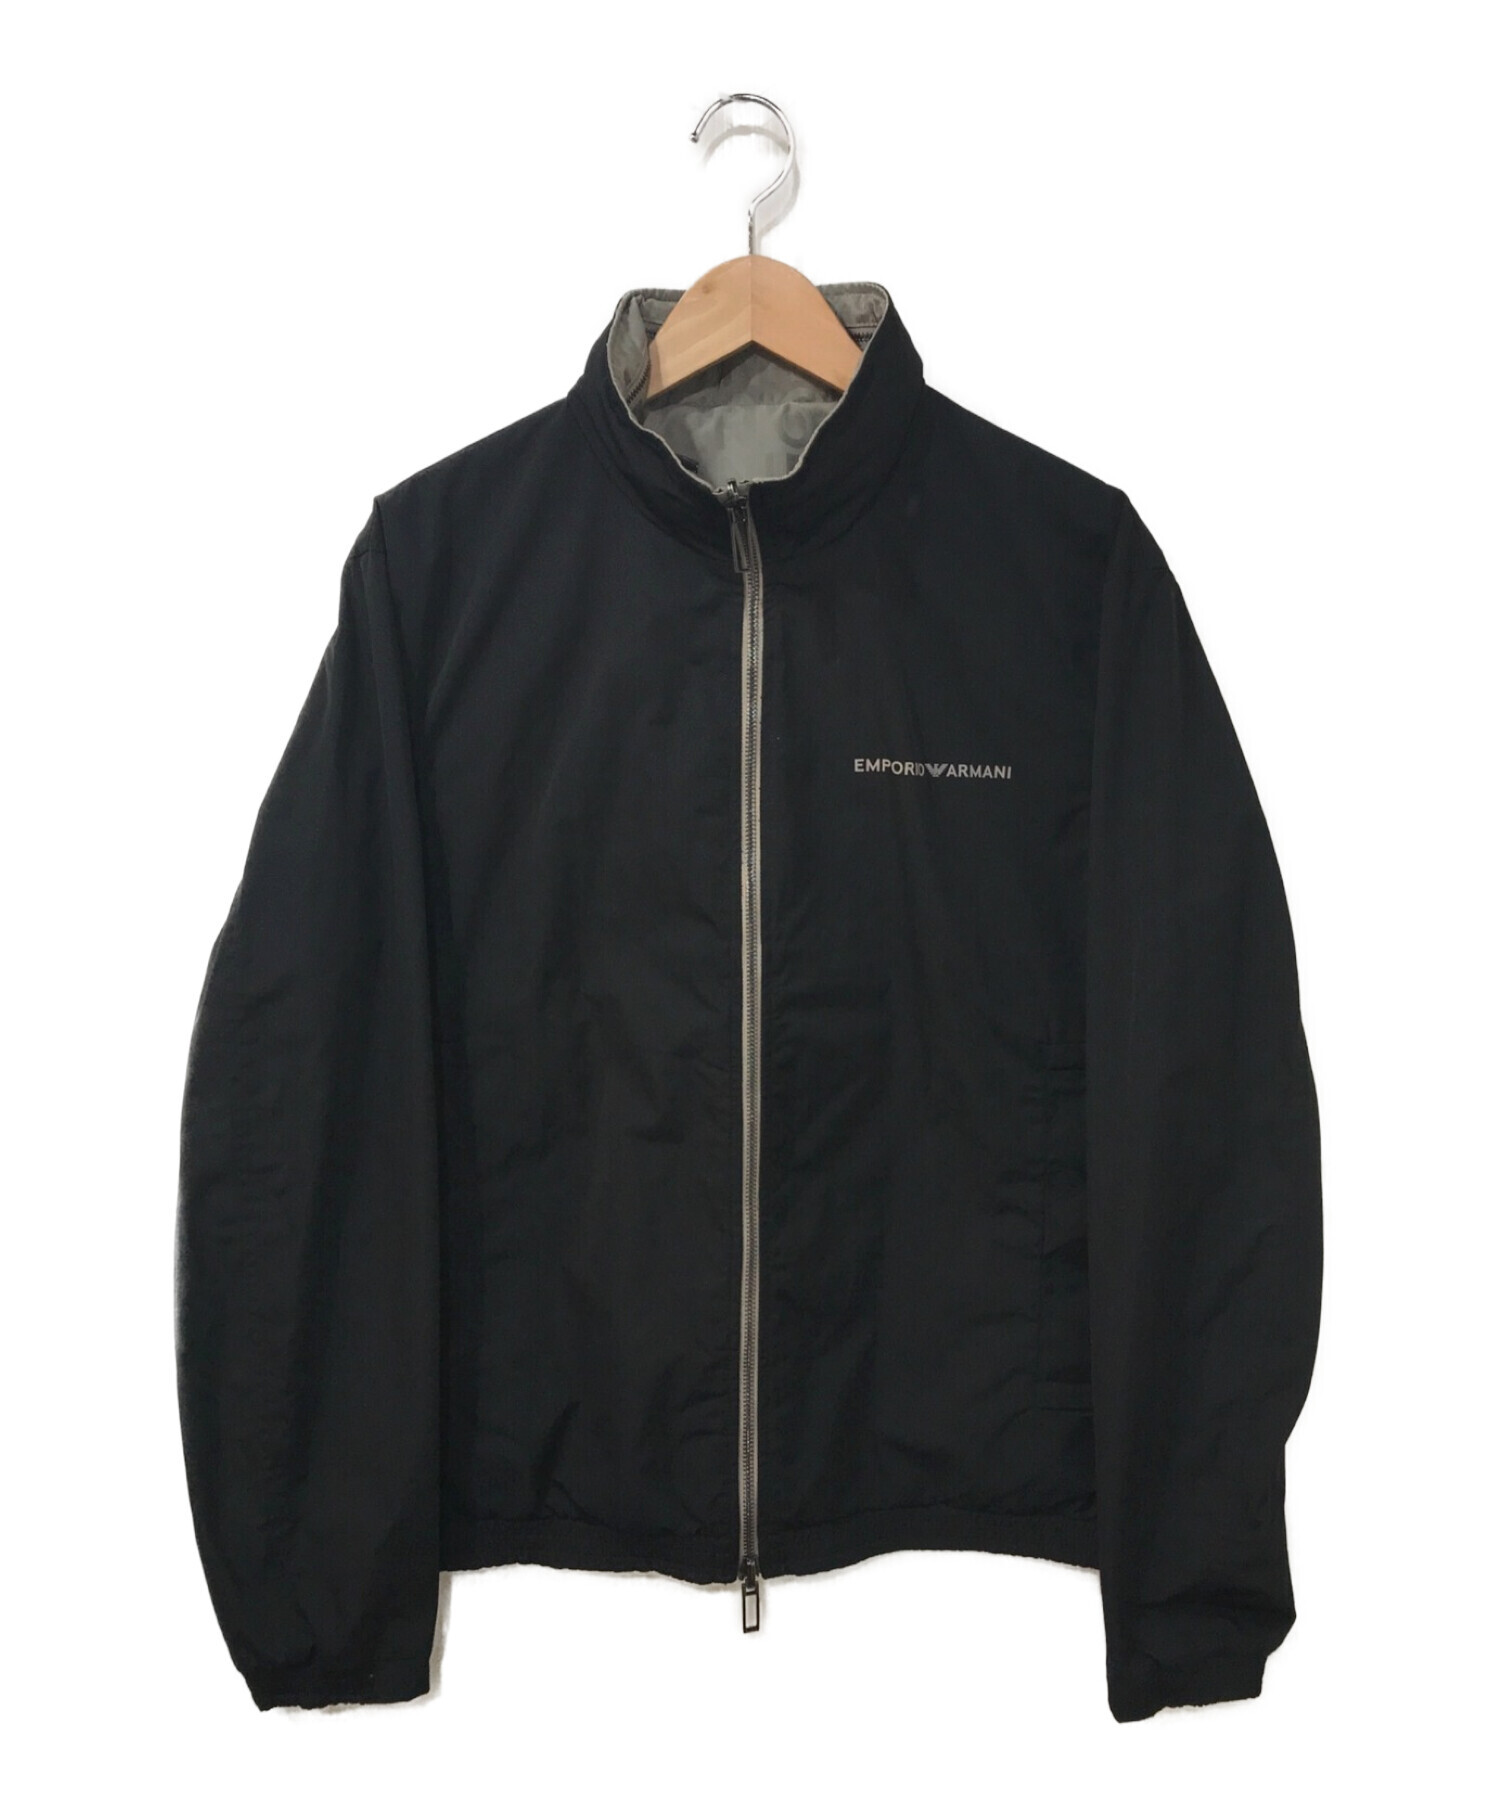 EMPORIO ARMANI (エンポリオアルマーニ) リバーシブルジャケット ブラック×グレー サイズ:50